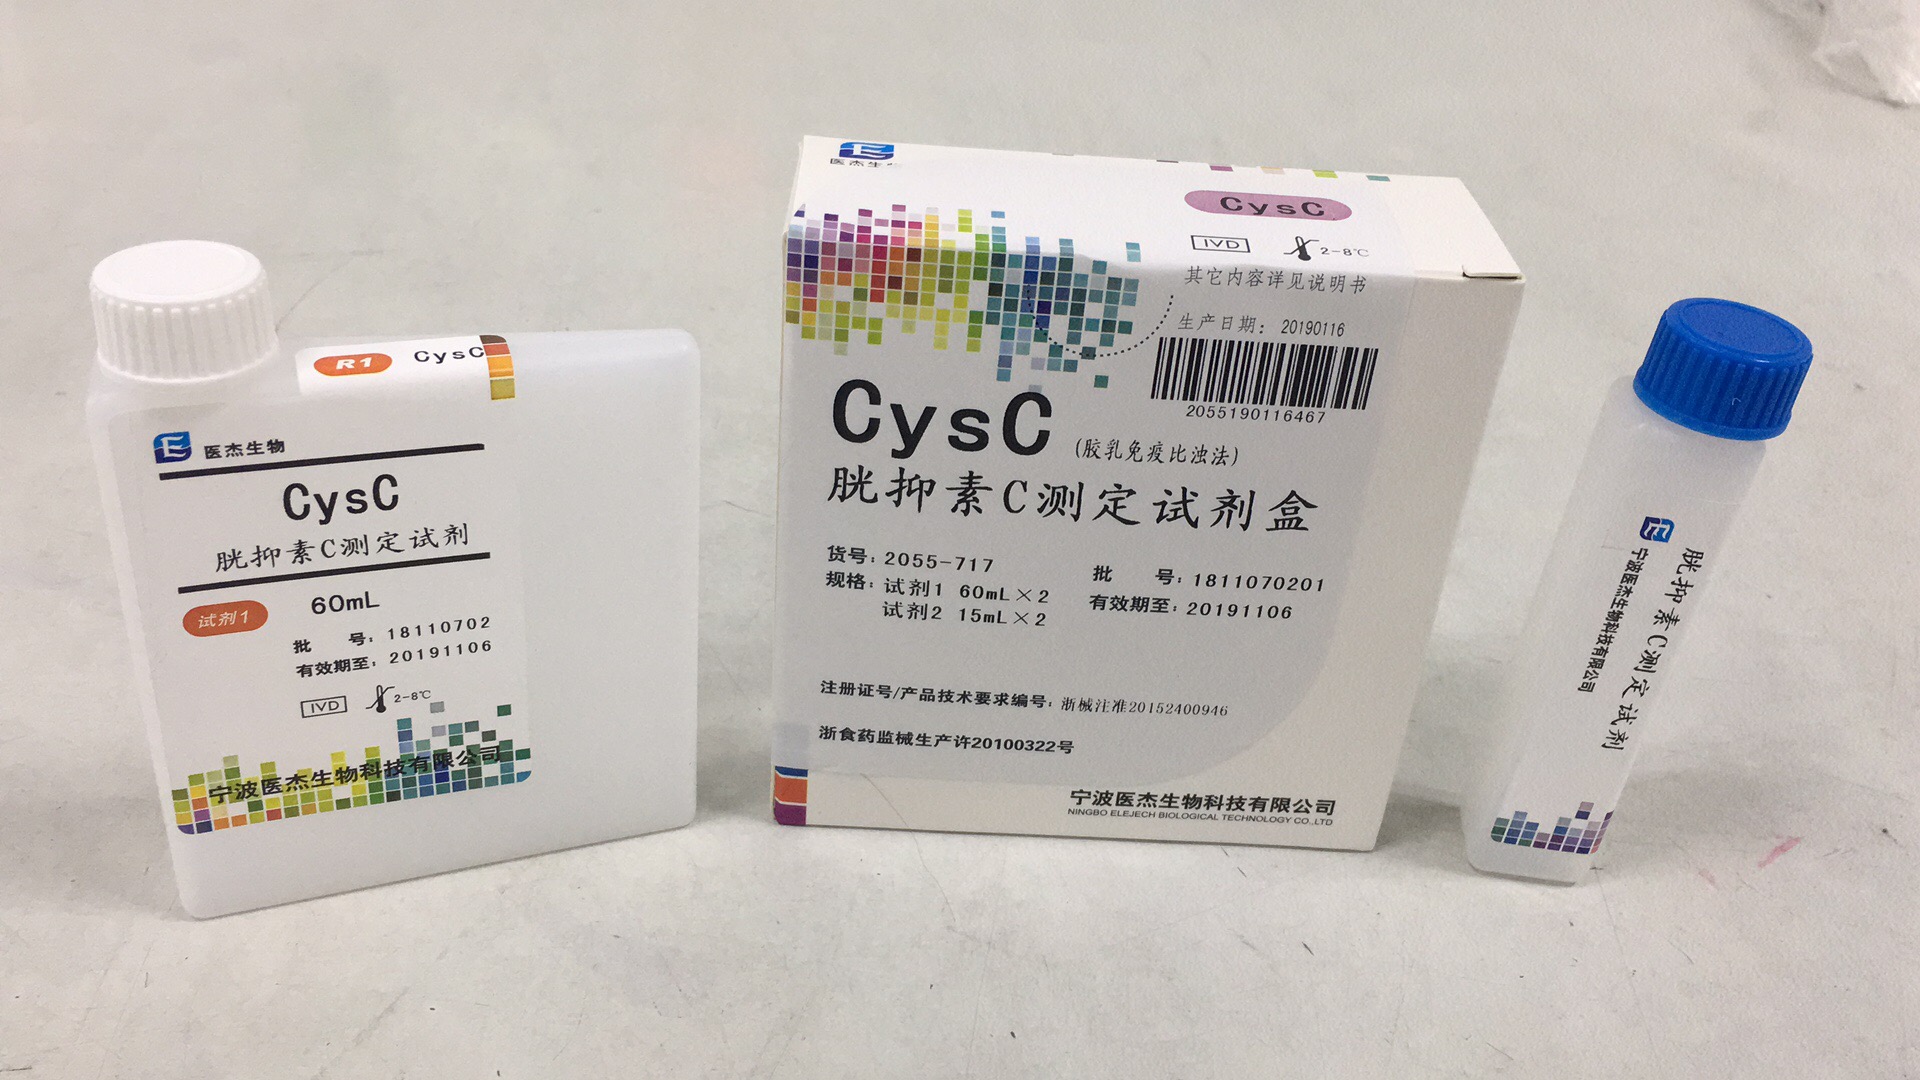 【医杰】胱抑素C测定试剂盒(胶乳免疫比浊法)